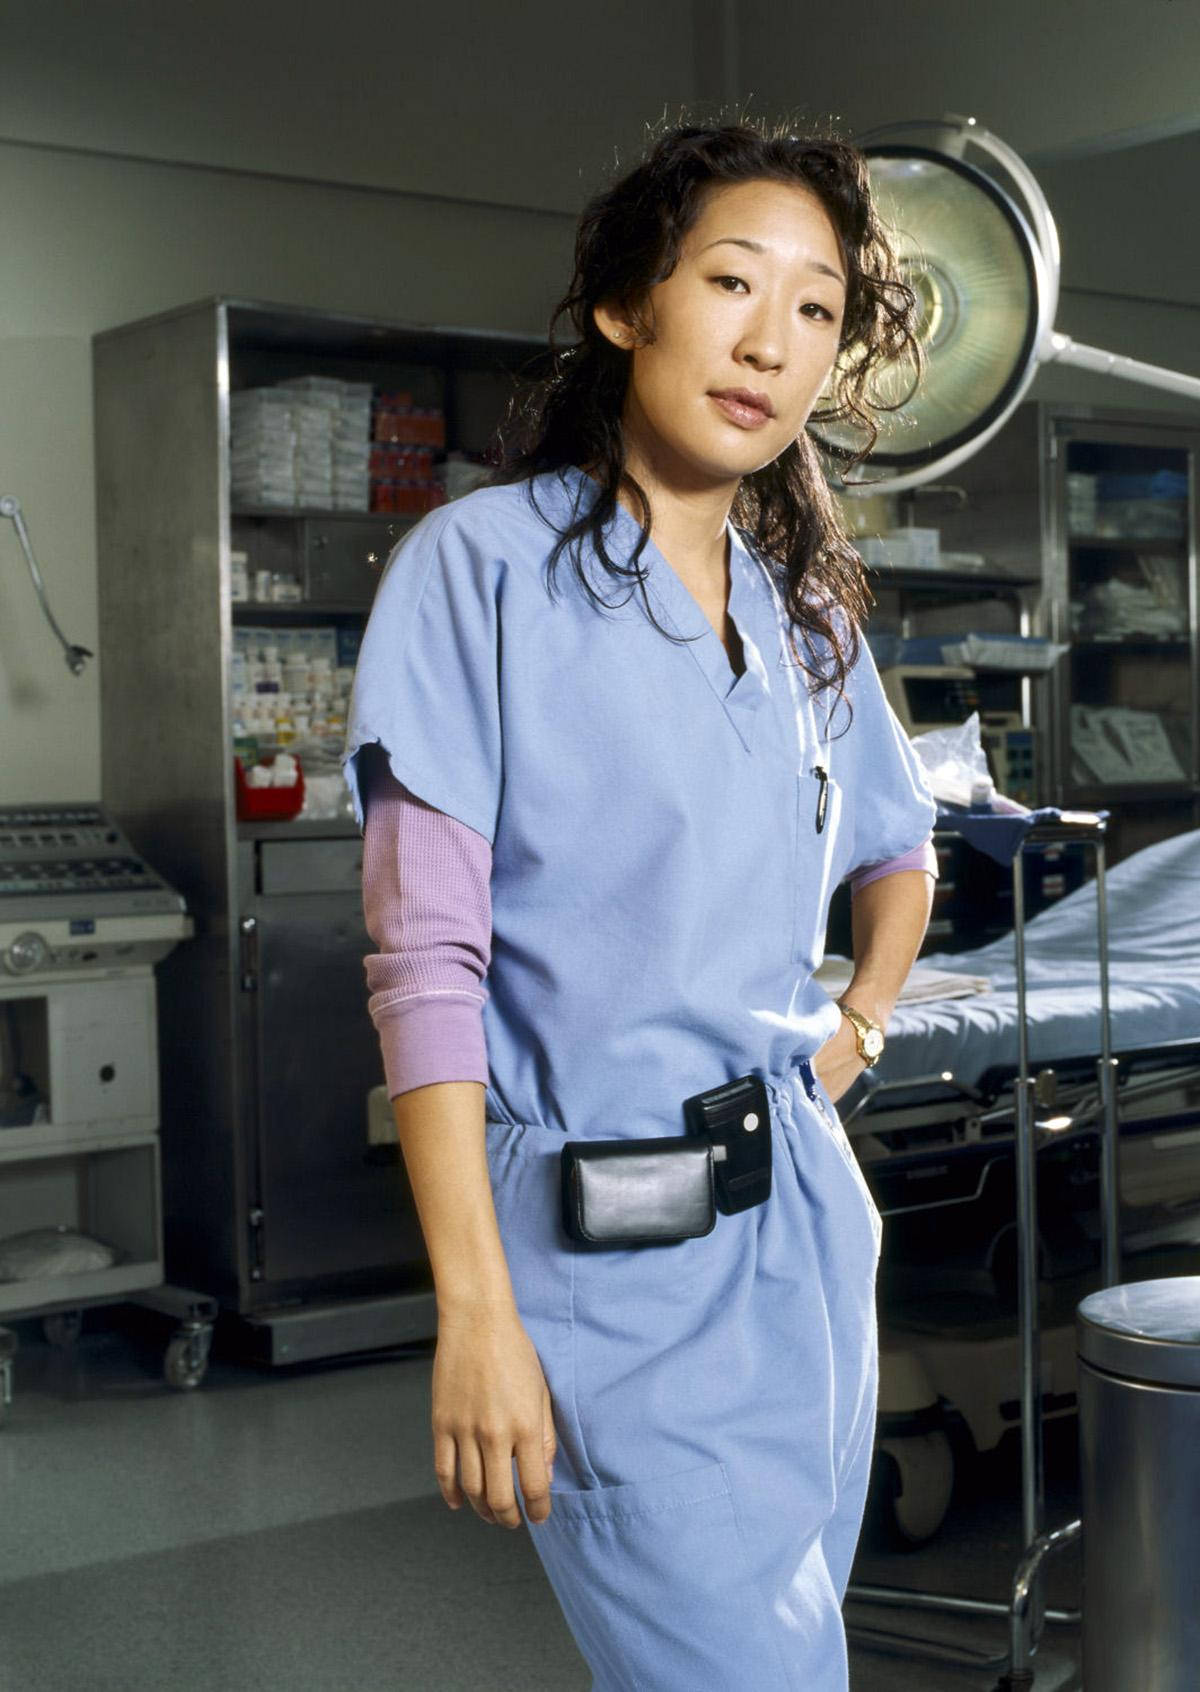 Sandraoh - Schauspielerin In Grey's Anatomy Wallpaper